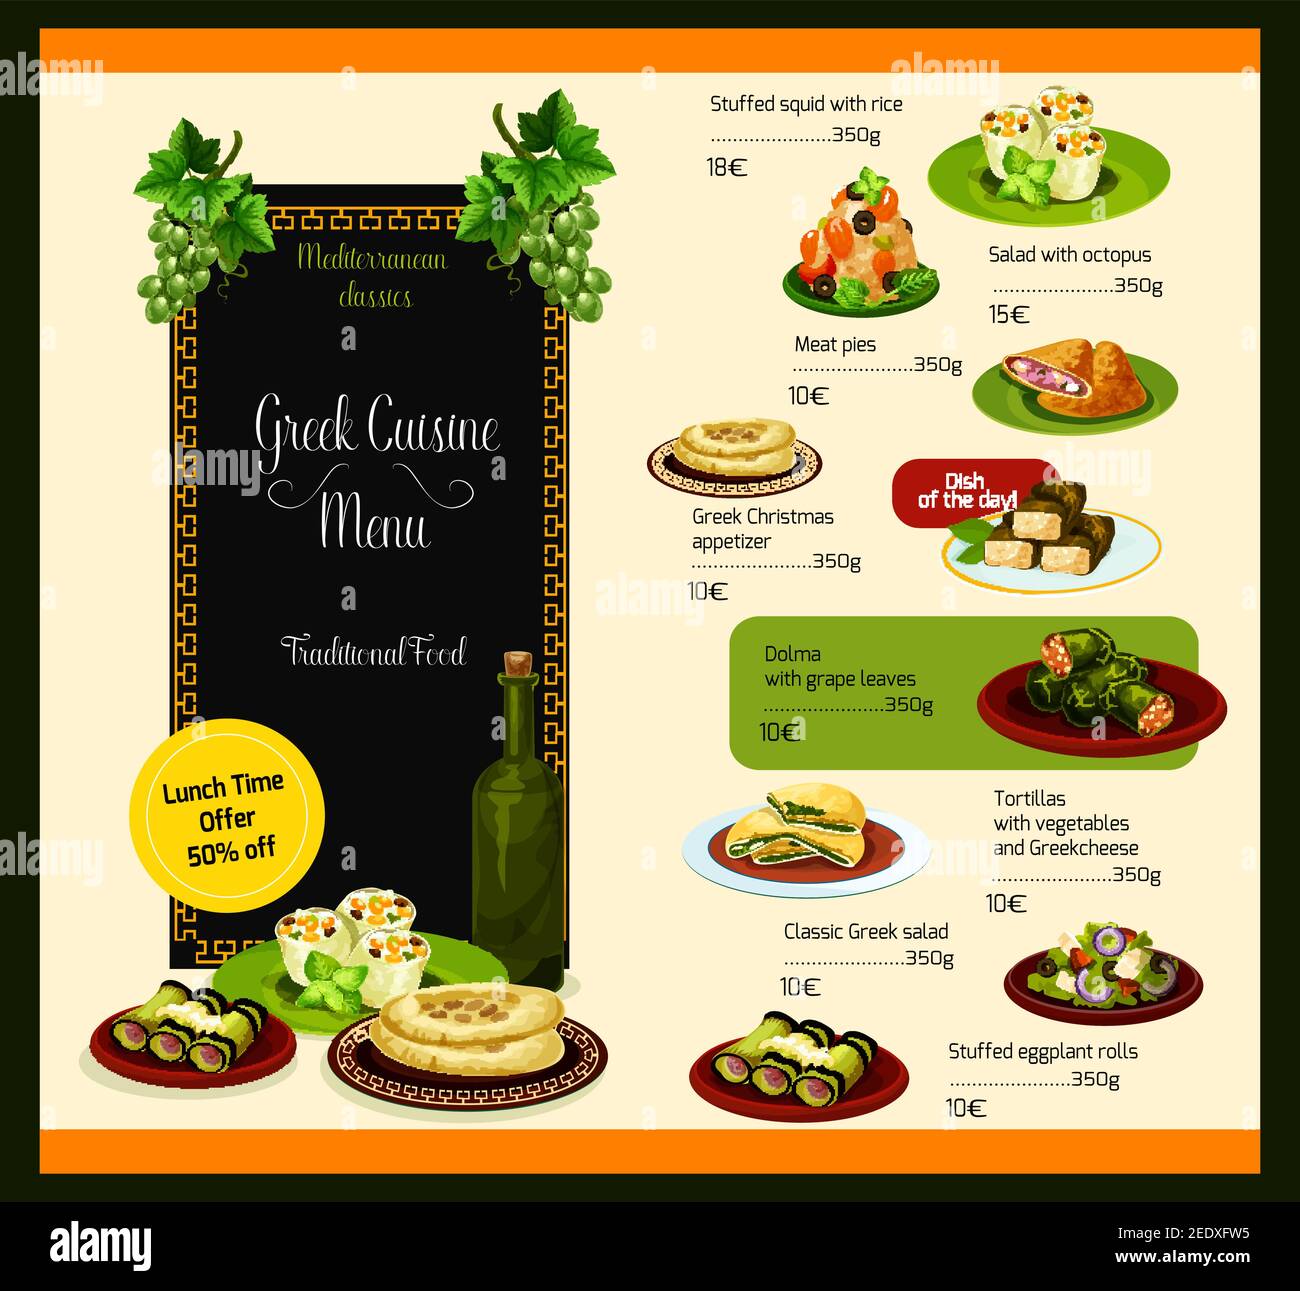 Modèle vectoriel de cuisine grecque pour le menu du déjeuner du restaurant. Plats traditionnels à base de viande, salades de légumes et soupes ou en-cas et desserts Greec Illustration de Vecteur